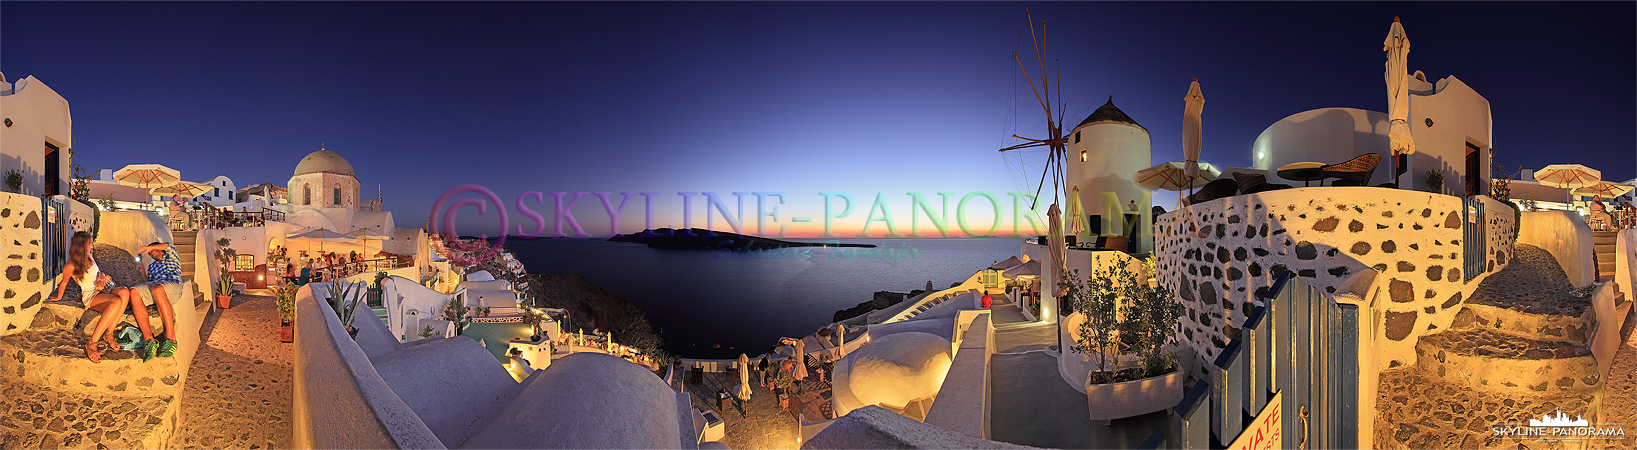 Aussichtspunkt an den Windmühlen zum Sonnenuntergang von Santorini - Kurz nach dem die Sonne untergegangen ist, sind auch die meisten Touristen wieder gegangen.